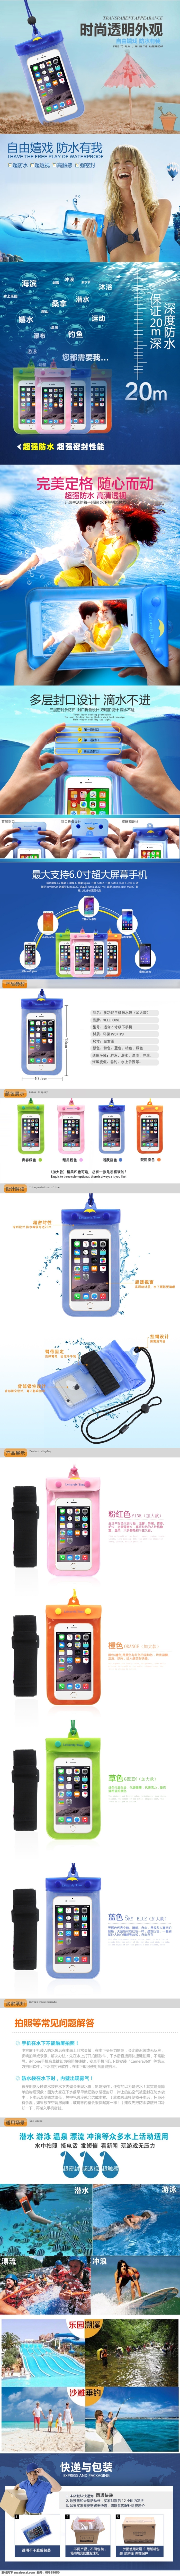 淘宝 手机 数码产品 防水 袋 详情 页 详情页 防水袋 青色 天蓝色